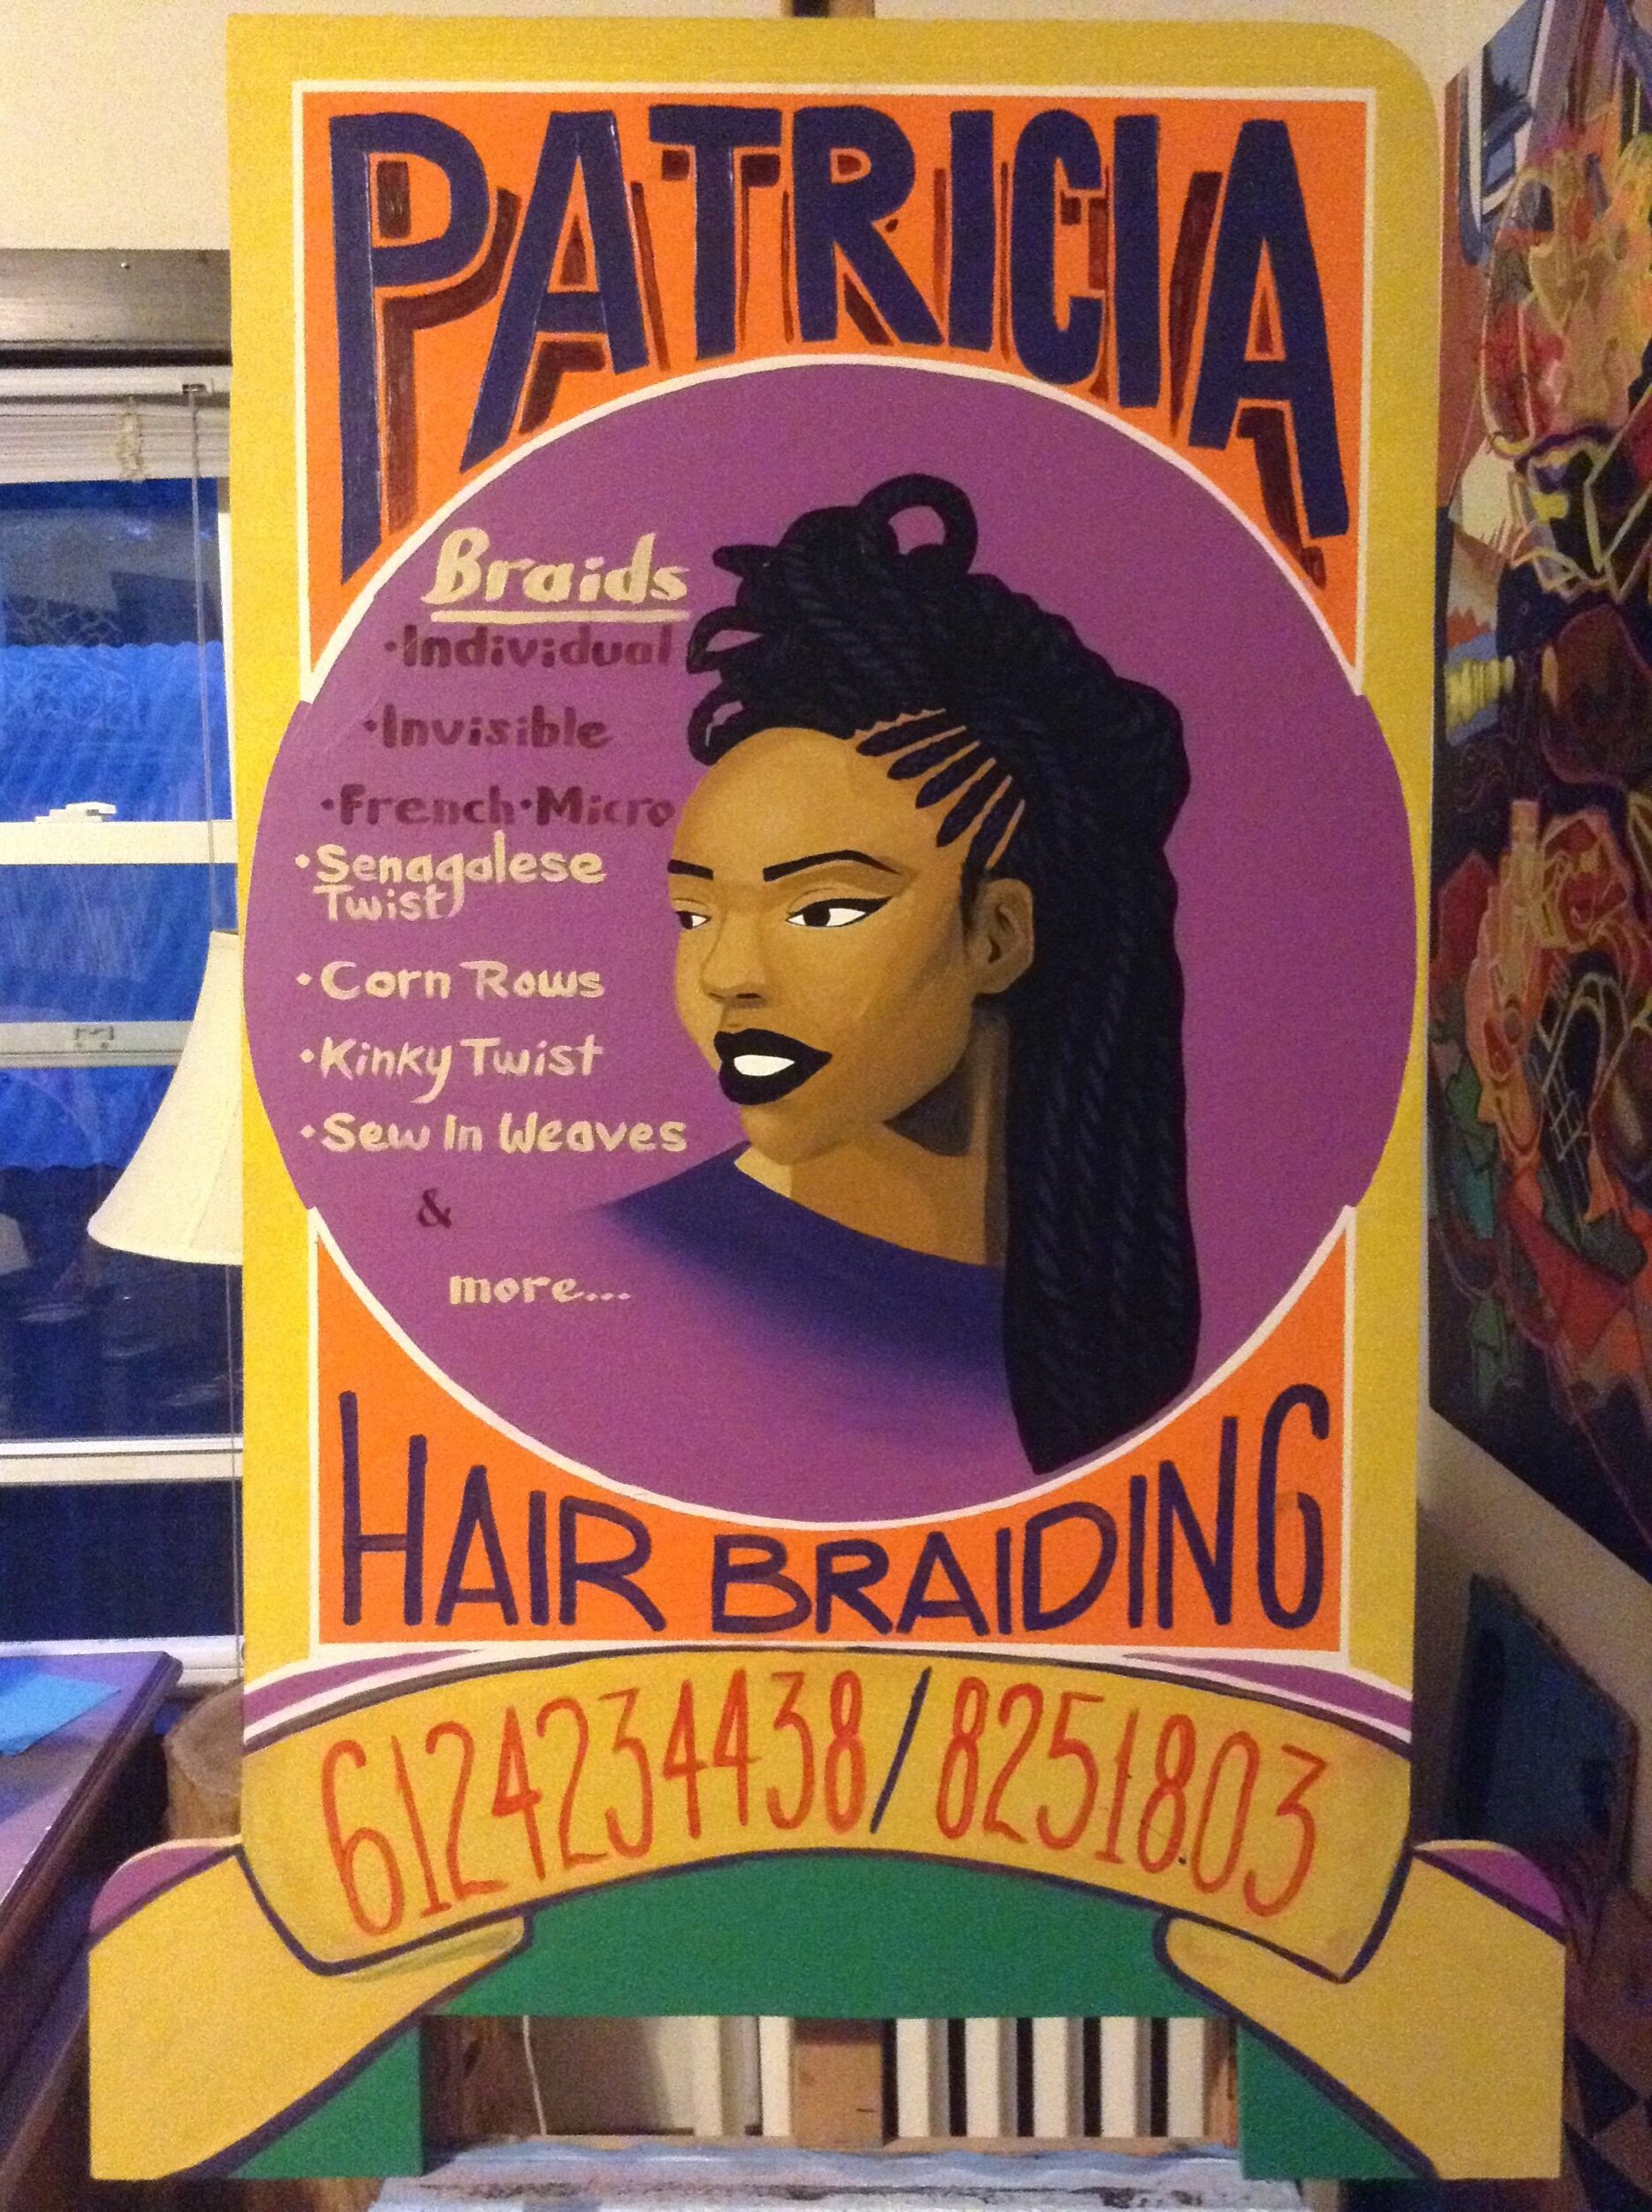 Patricia Hair Braiding (sandwich board)